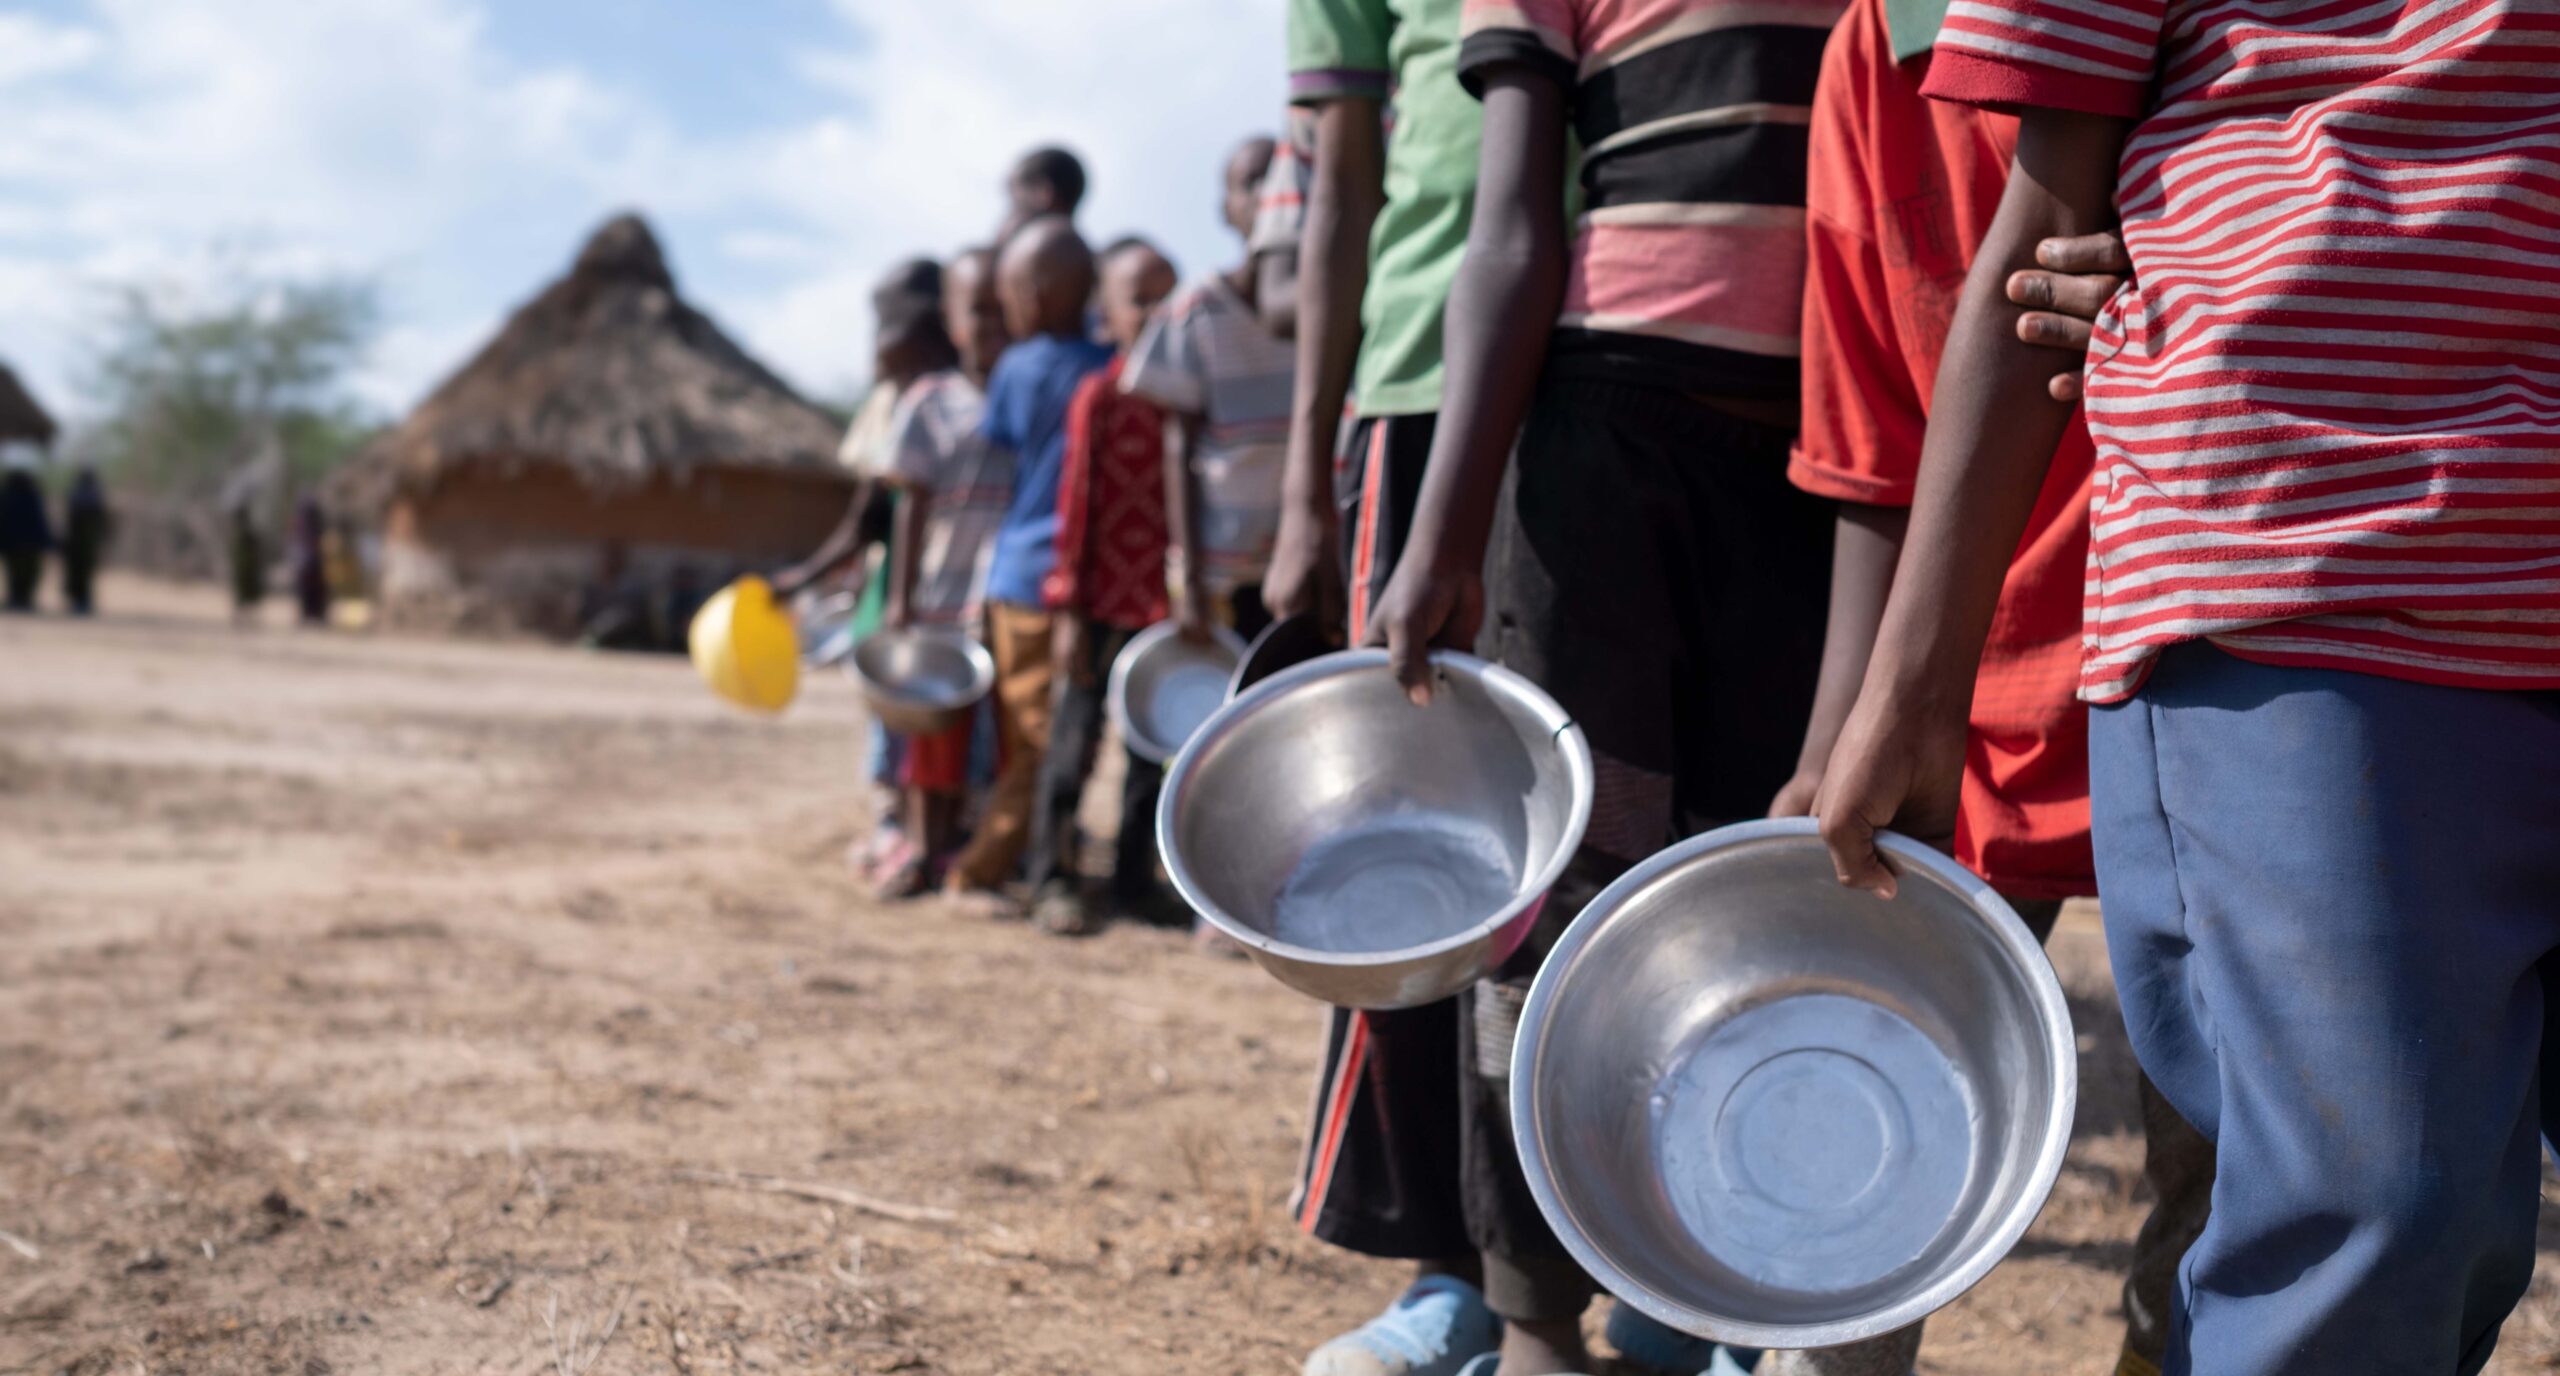 “Emergencia global”: más de 300 millones de personas están cerca de morir de hambre, según la ONU